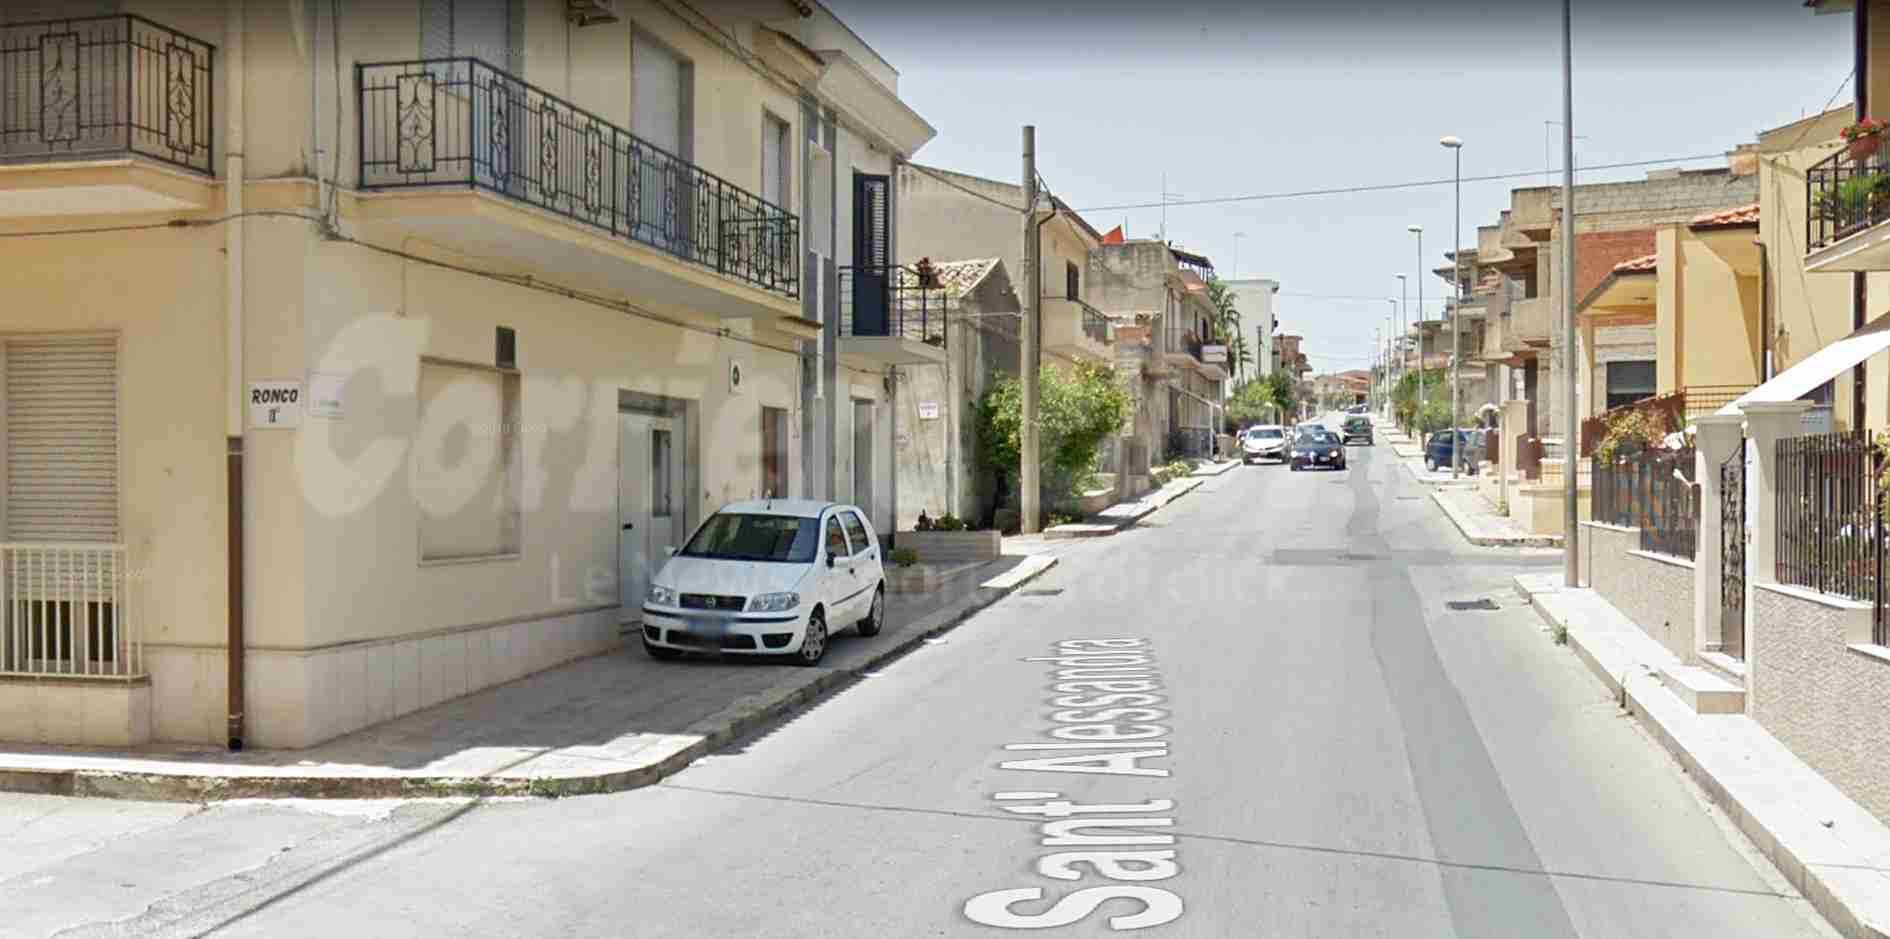 Gaber, Battisti, Dalla: cambiano i nomi dei Ronchi di Via S. Alessandra alta